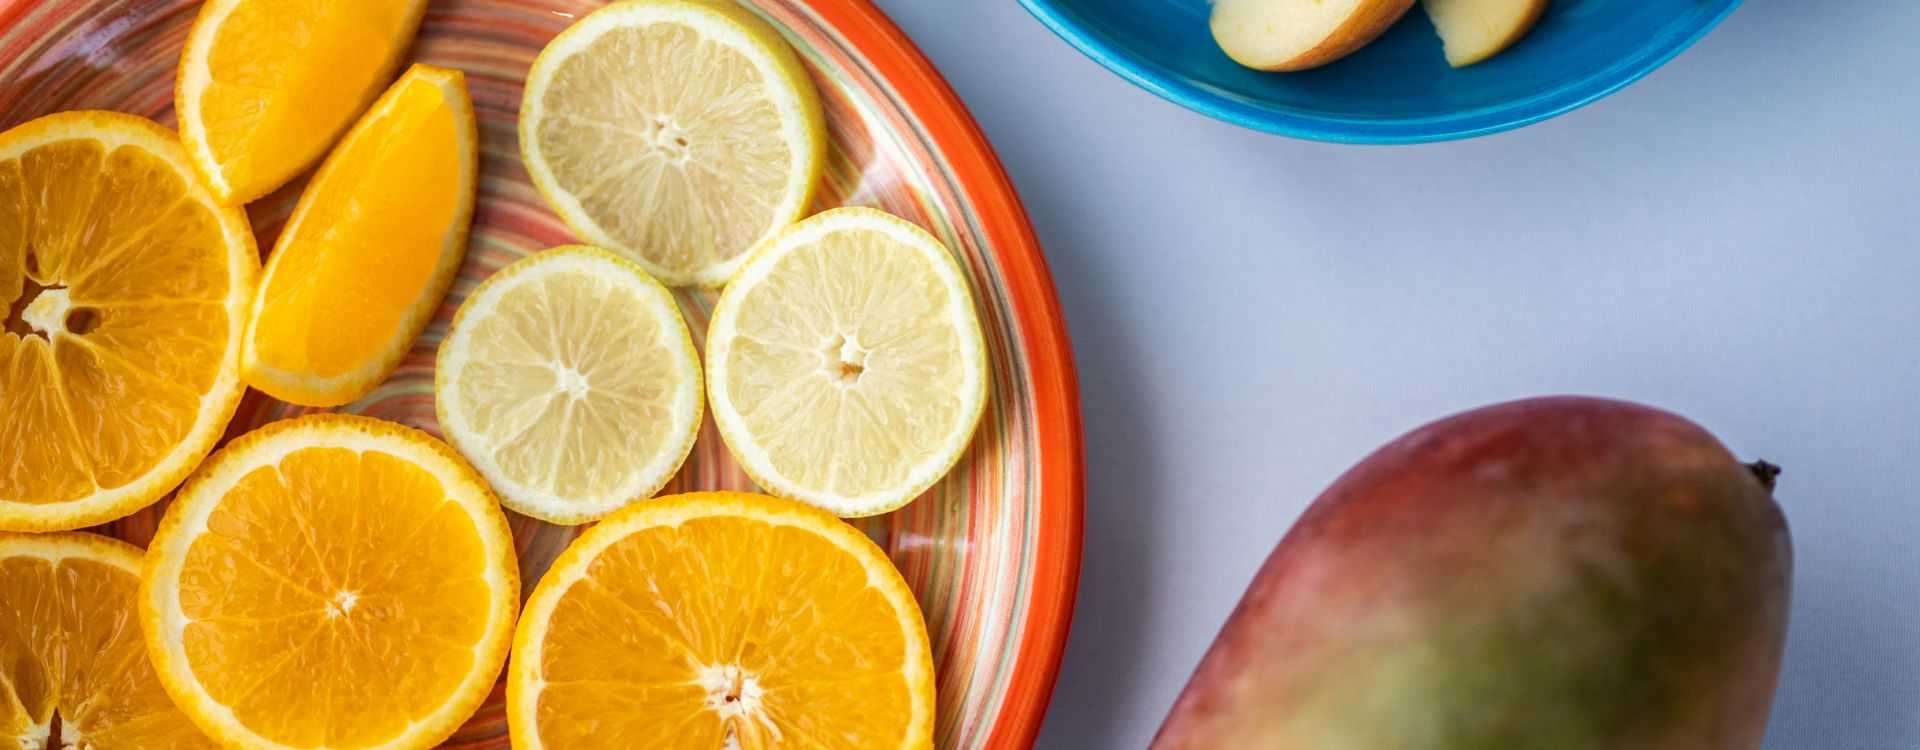 Vajillas coloridas: La clave para presentar frutas frescas en verano